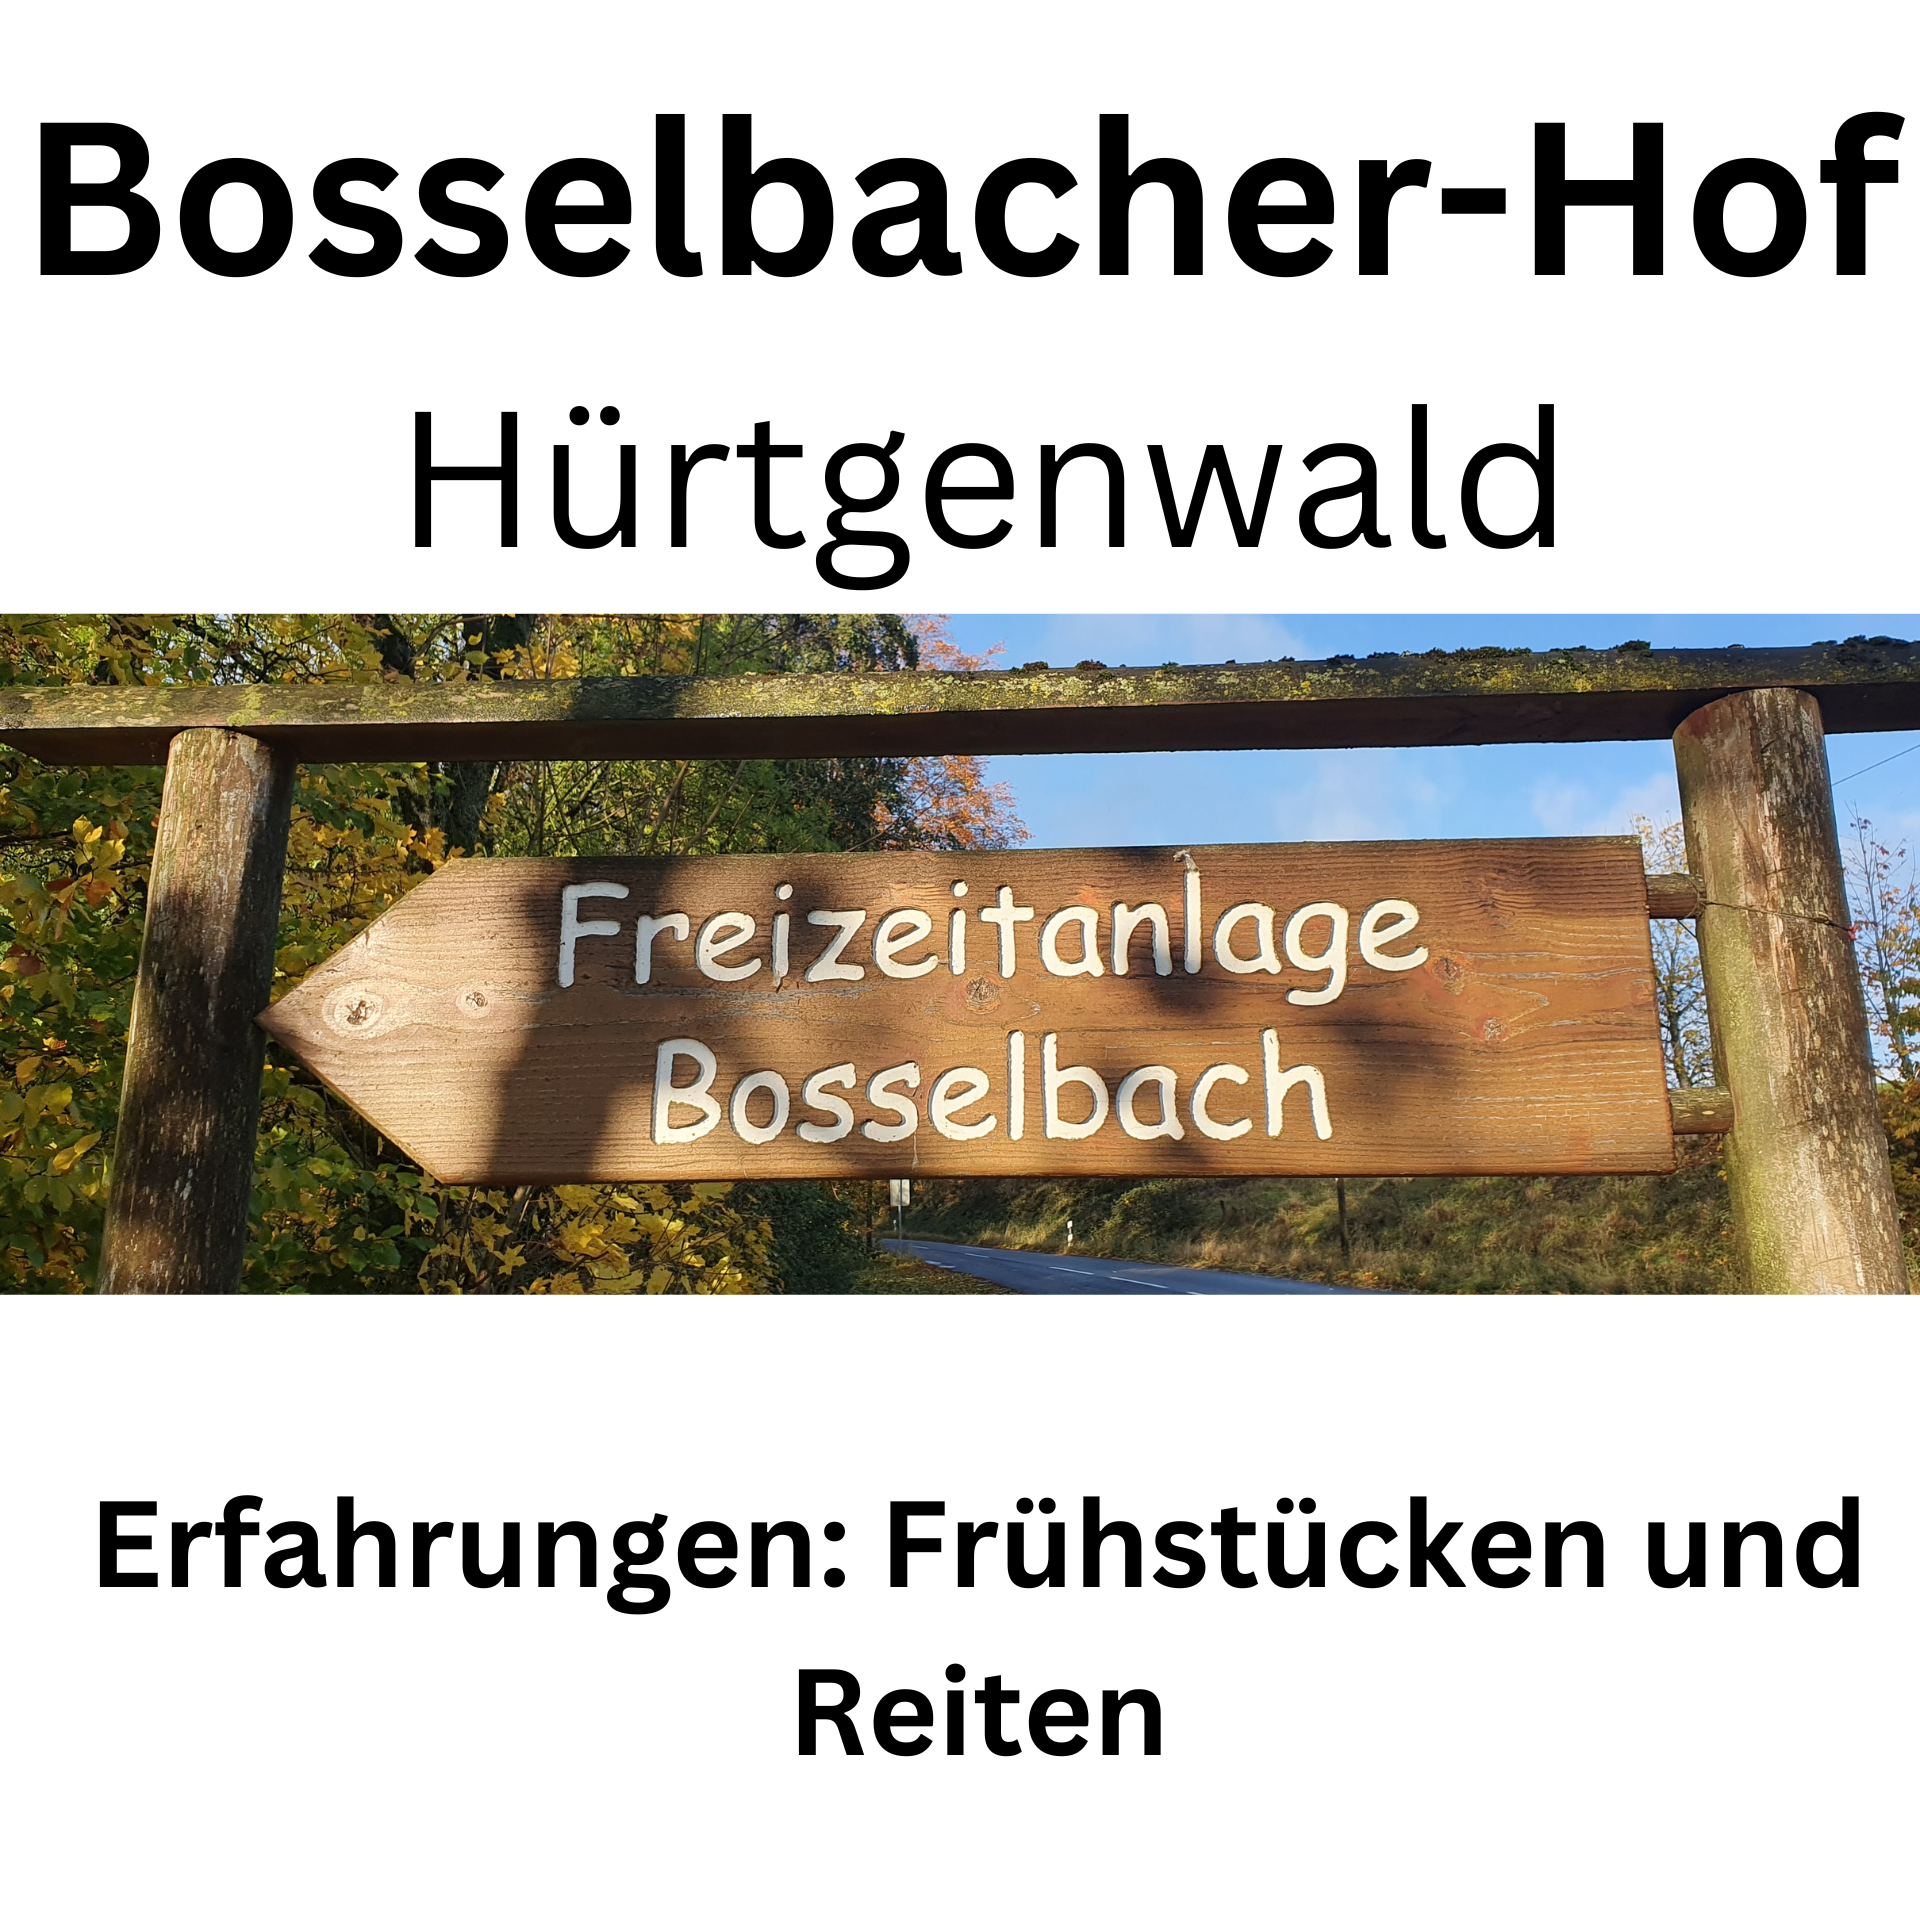 Bosselbacher-Hof Hürtgenwald Reiterhof Ferienhof Erfahrungen